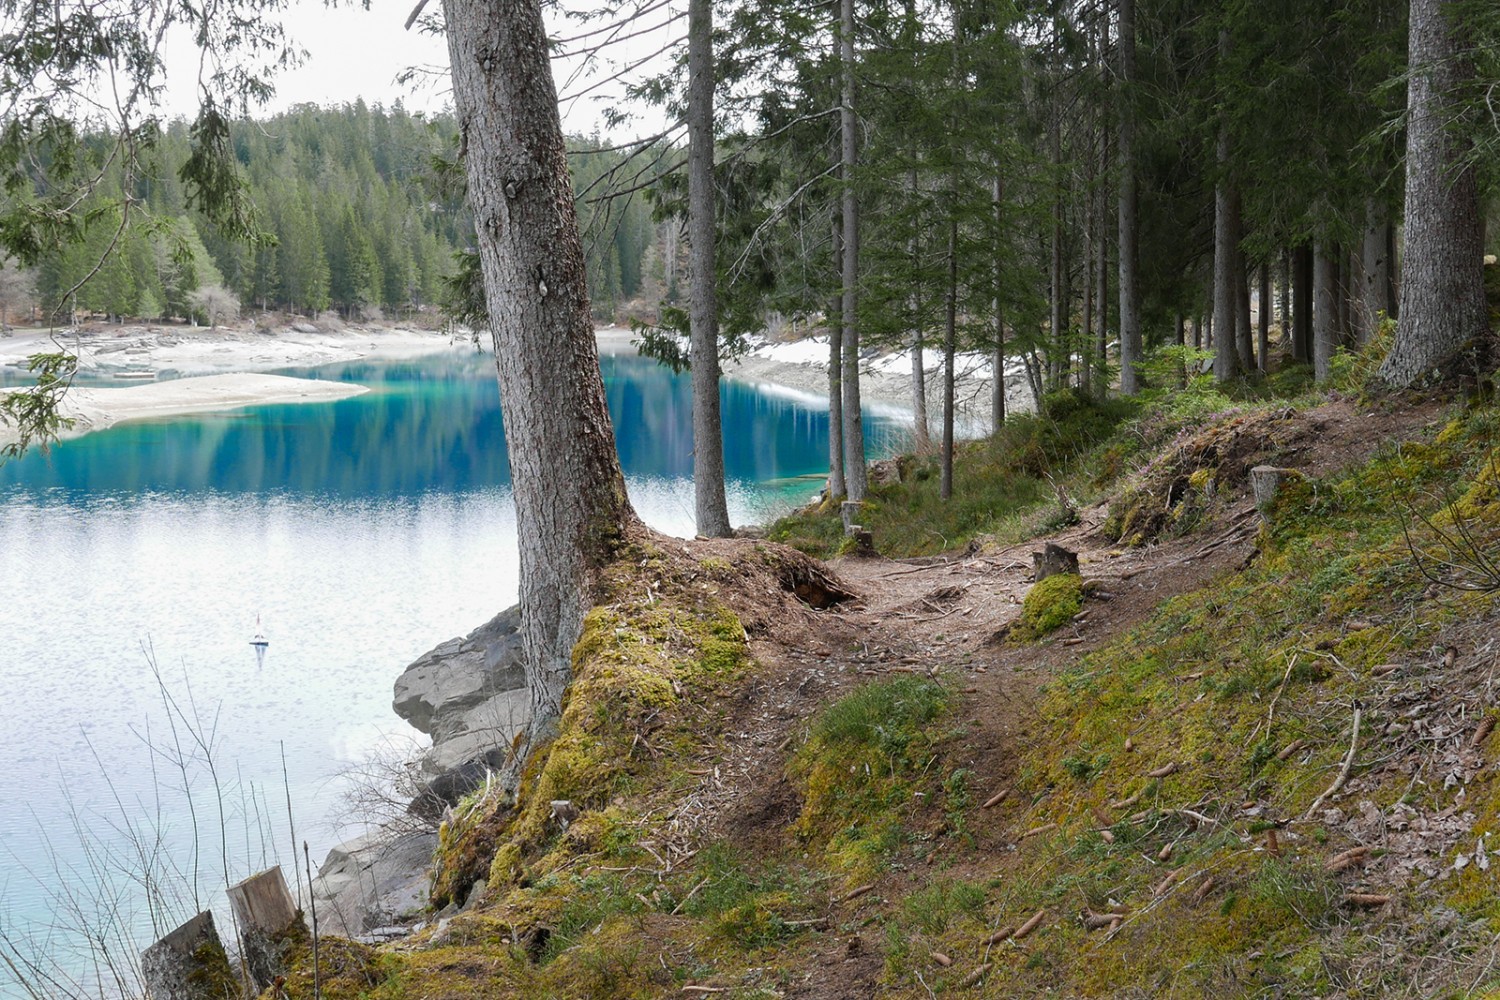 Boschi verde intenso e laghi alpini dall’acqua turchese: l’escursione è caratterizzata da forti contrasti cromatici. Foto: Susanne Frauenfelder